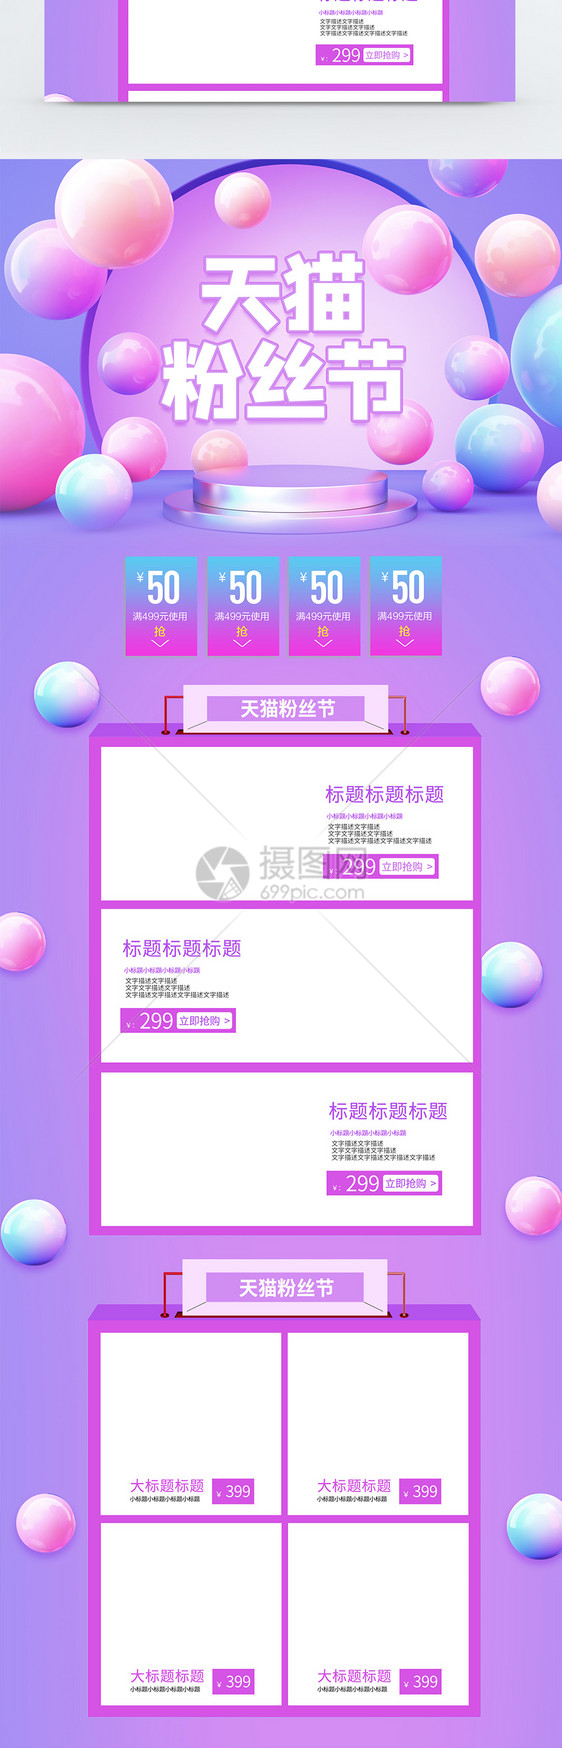 紫色立体C4D天猫粉丝节淘宝首页图片